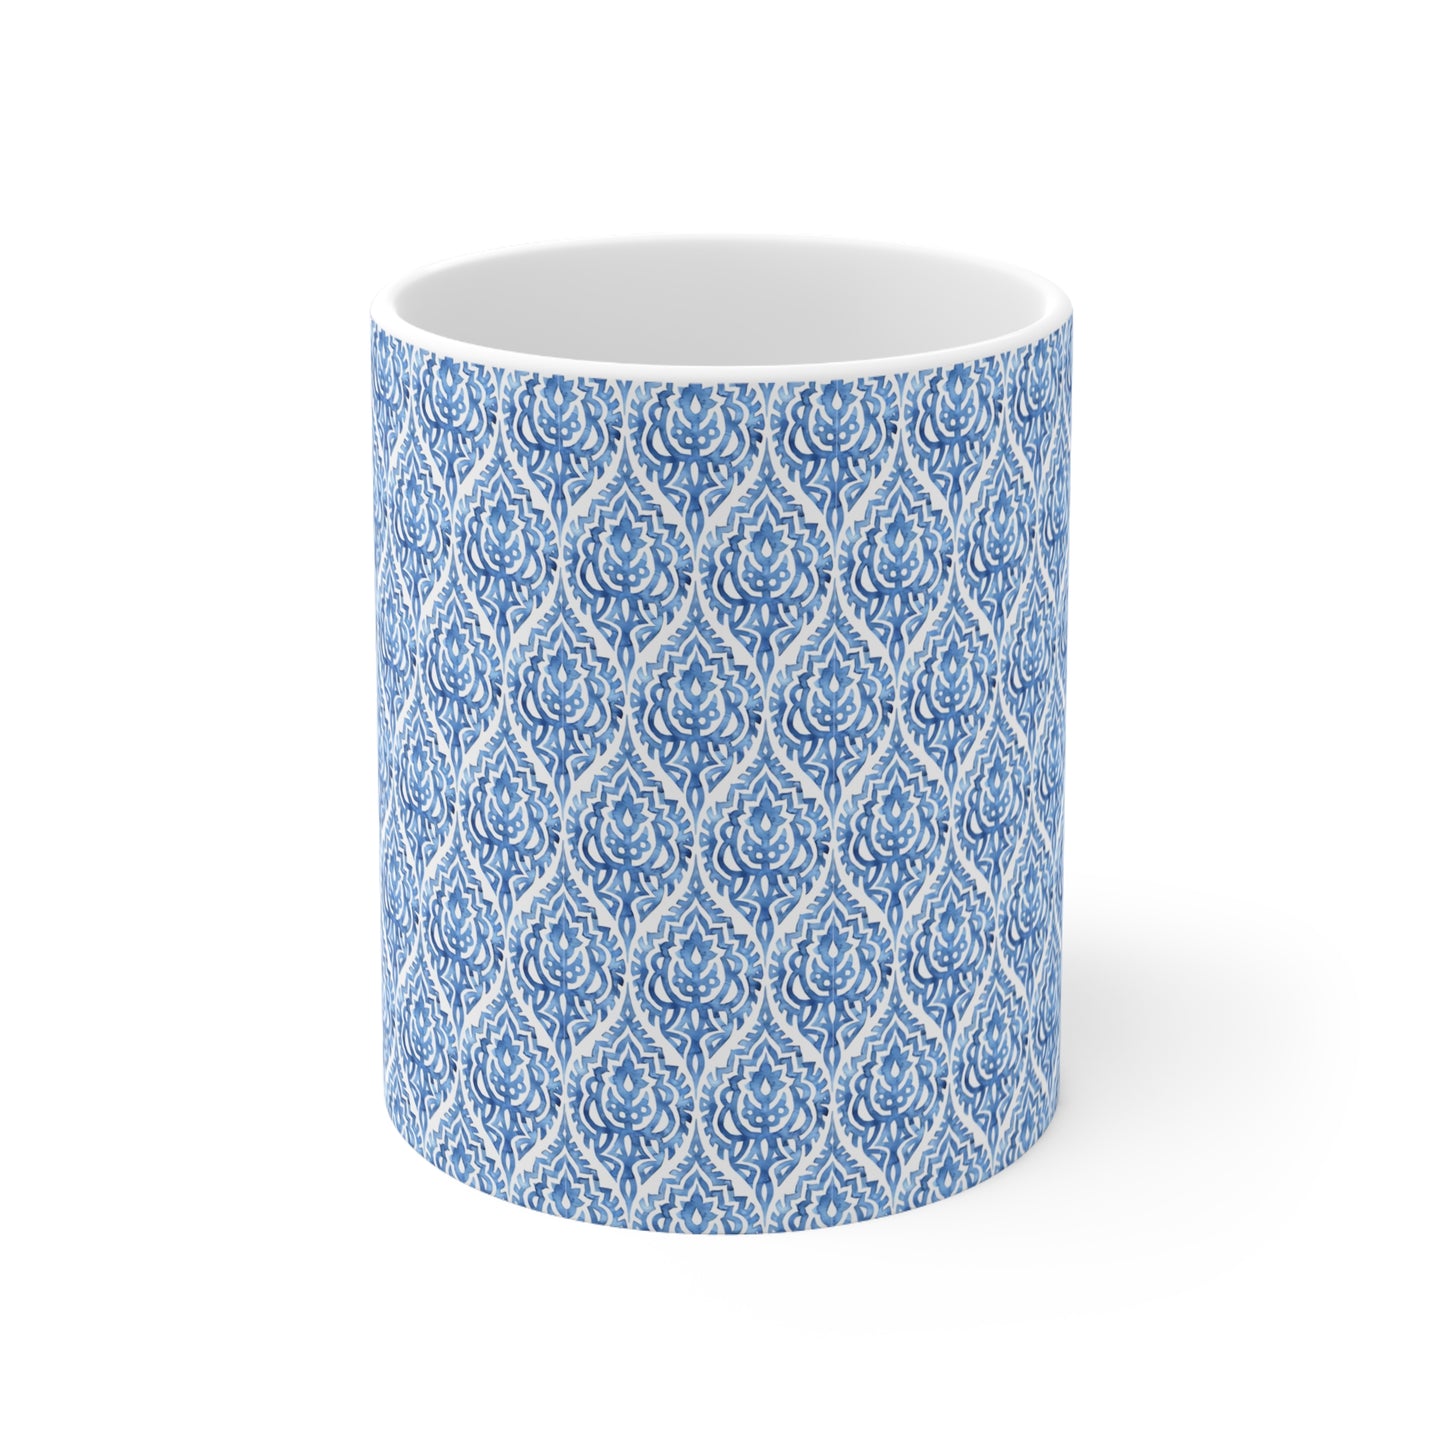 Blue Pattern Print Ceramic Mug, 11oz